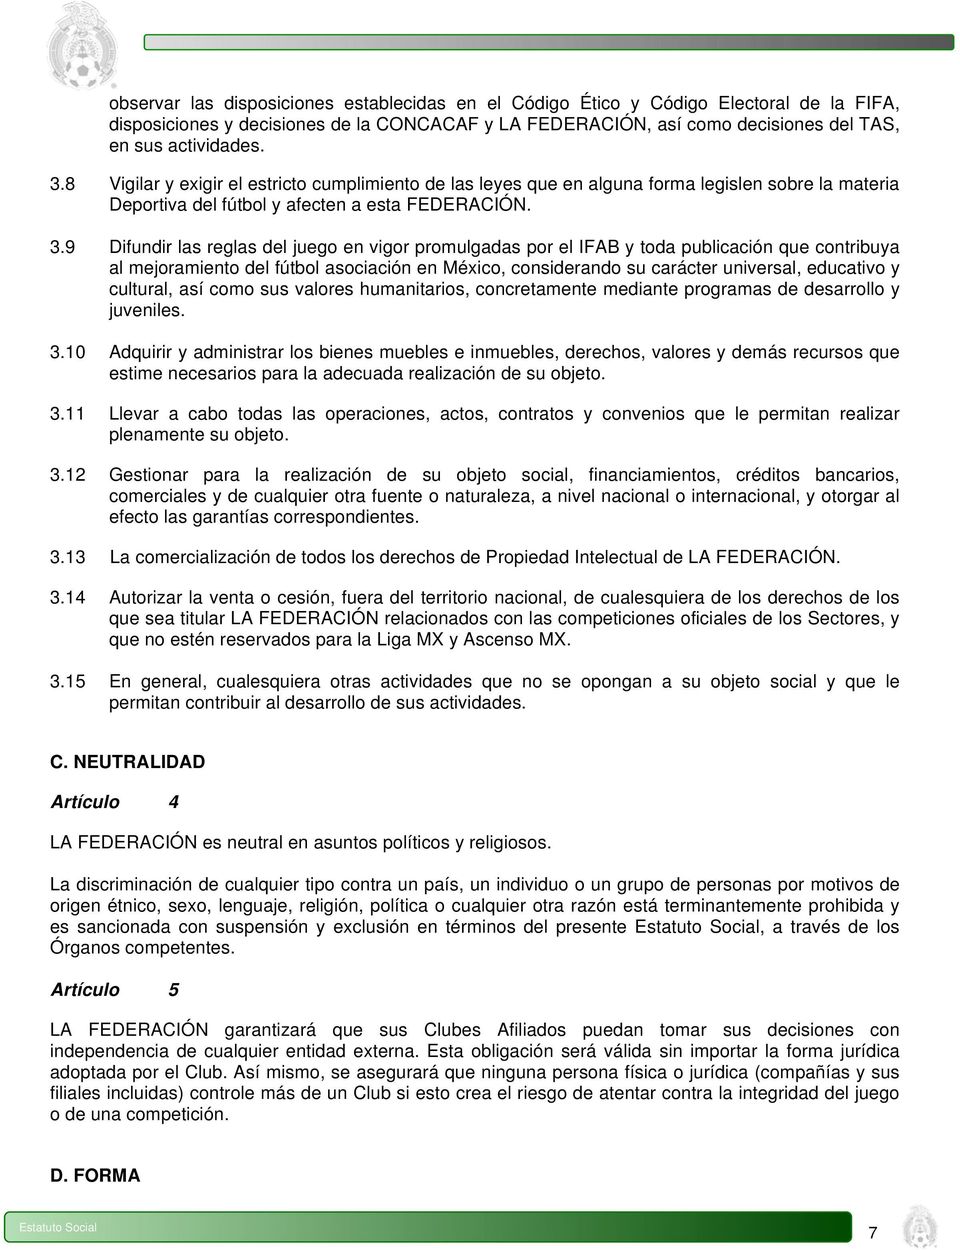 9 Difundir las reglas del juego en vigor promulgadas por el IFAB y toda publicación que contribuya al mejoramiento del fútbol asociación en México, considerando su carácter universal, educativo y